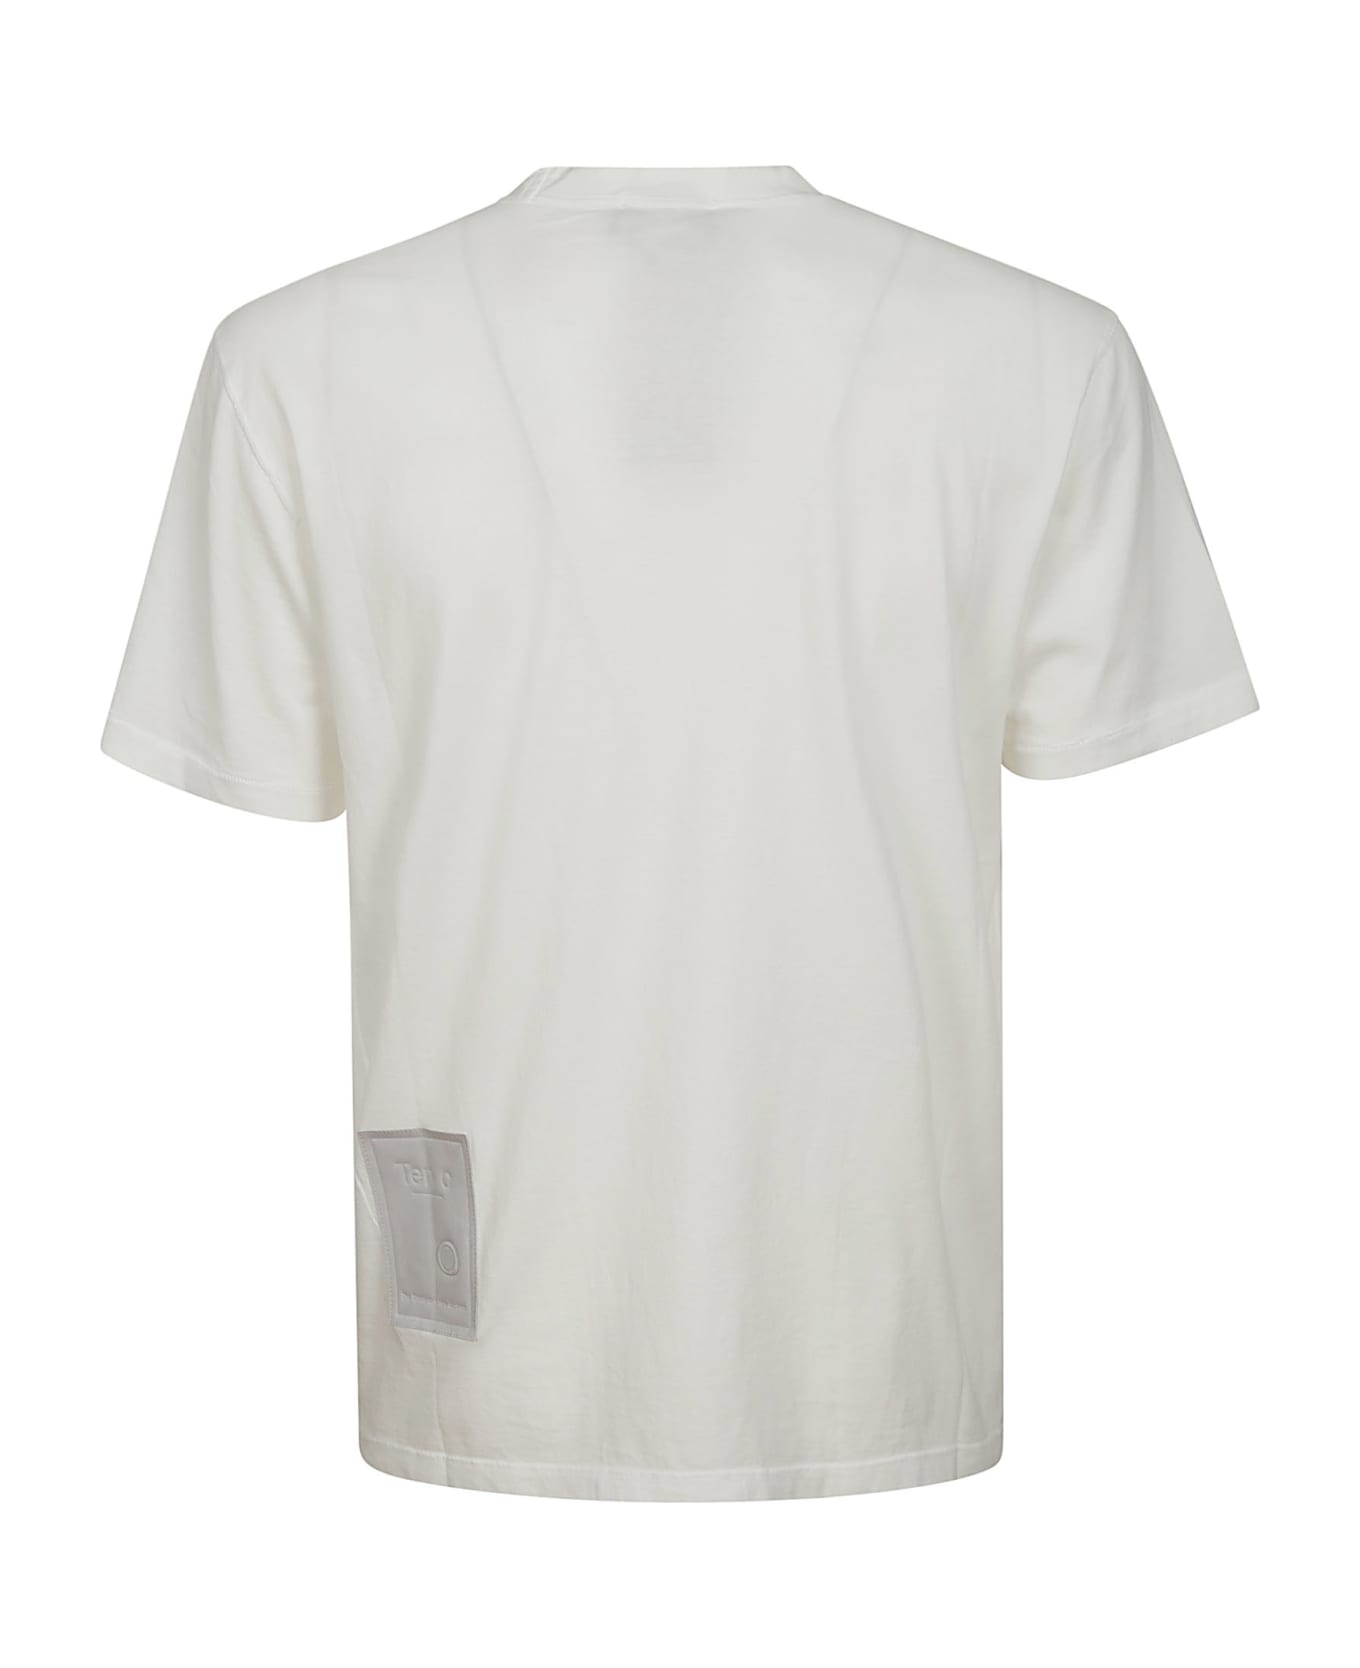 Ten C Tshirt - White シャツ